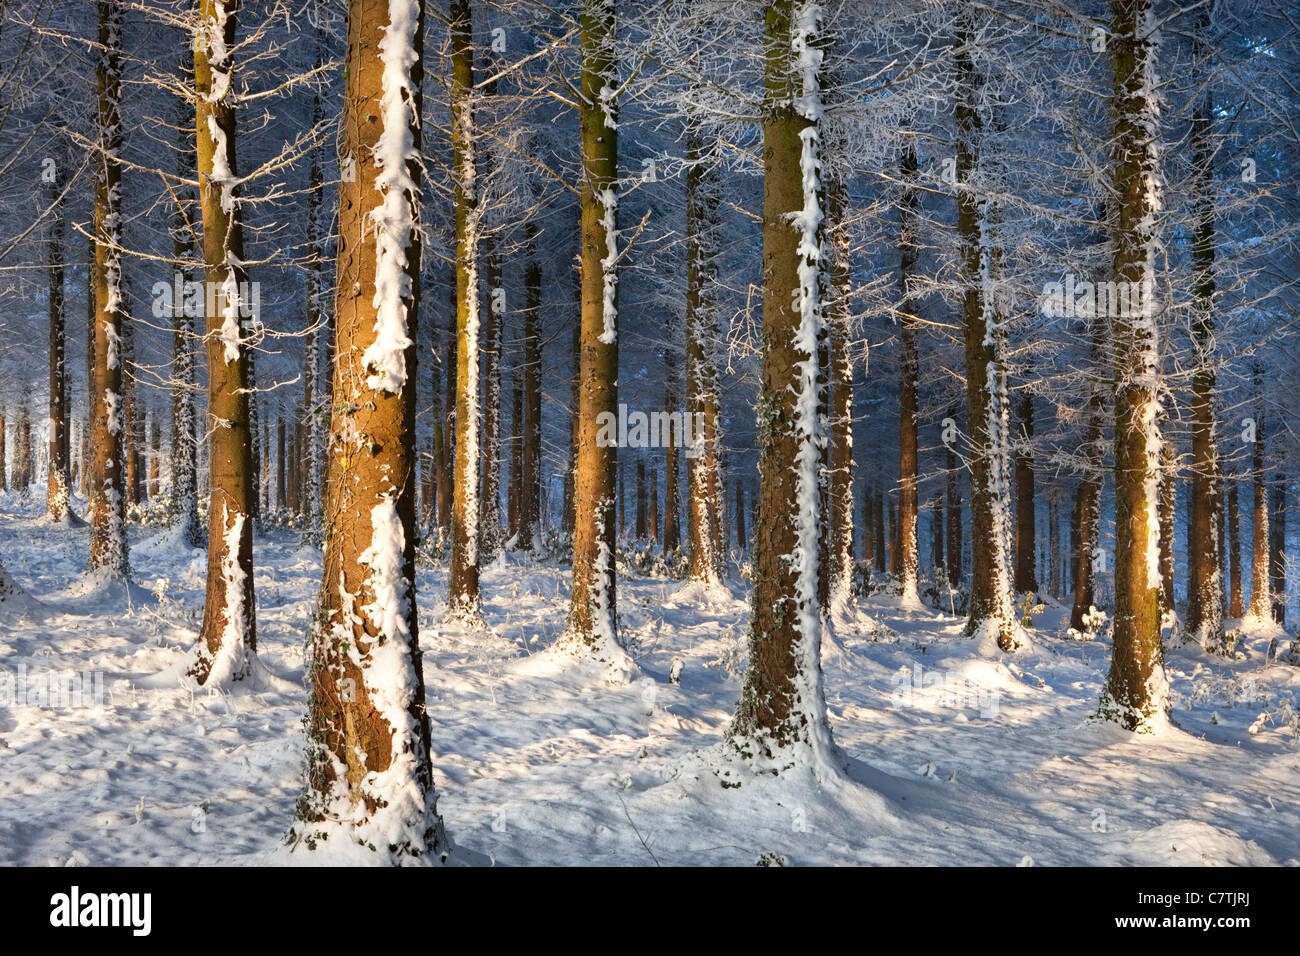 Trasformata per forte gradiente smerigliati alberi in un inverno nevoso bosco, Morchard legno, Devon, Inghilterra. Inverno (dicembre 2010). Foto Stock